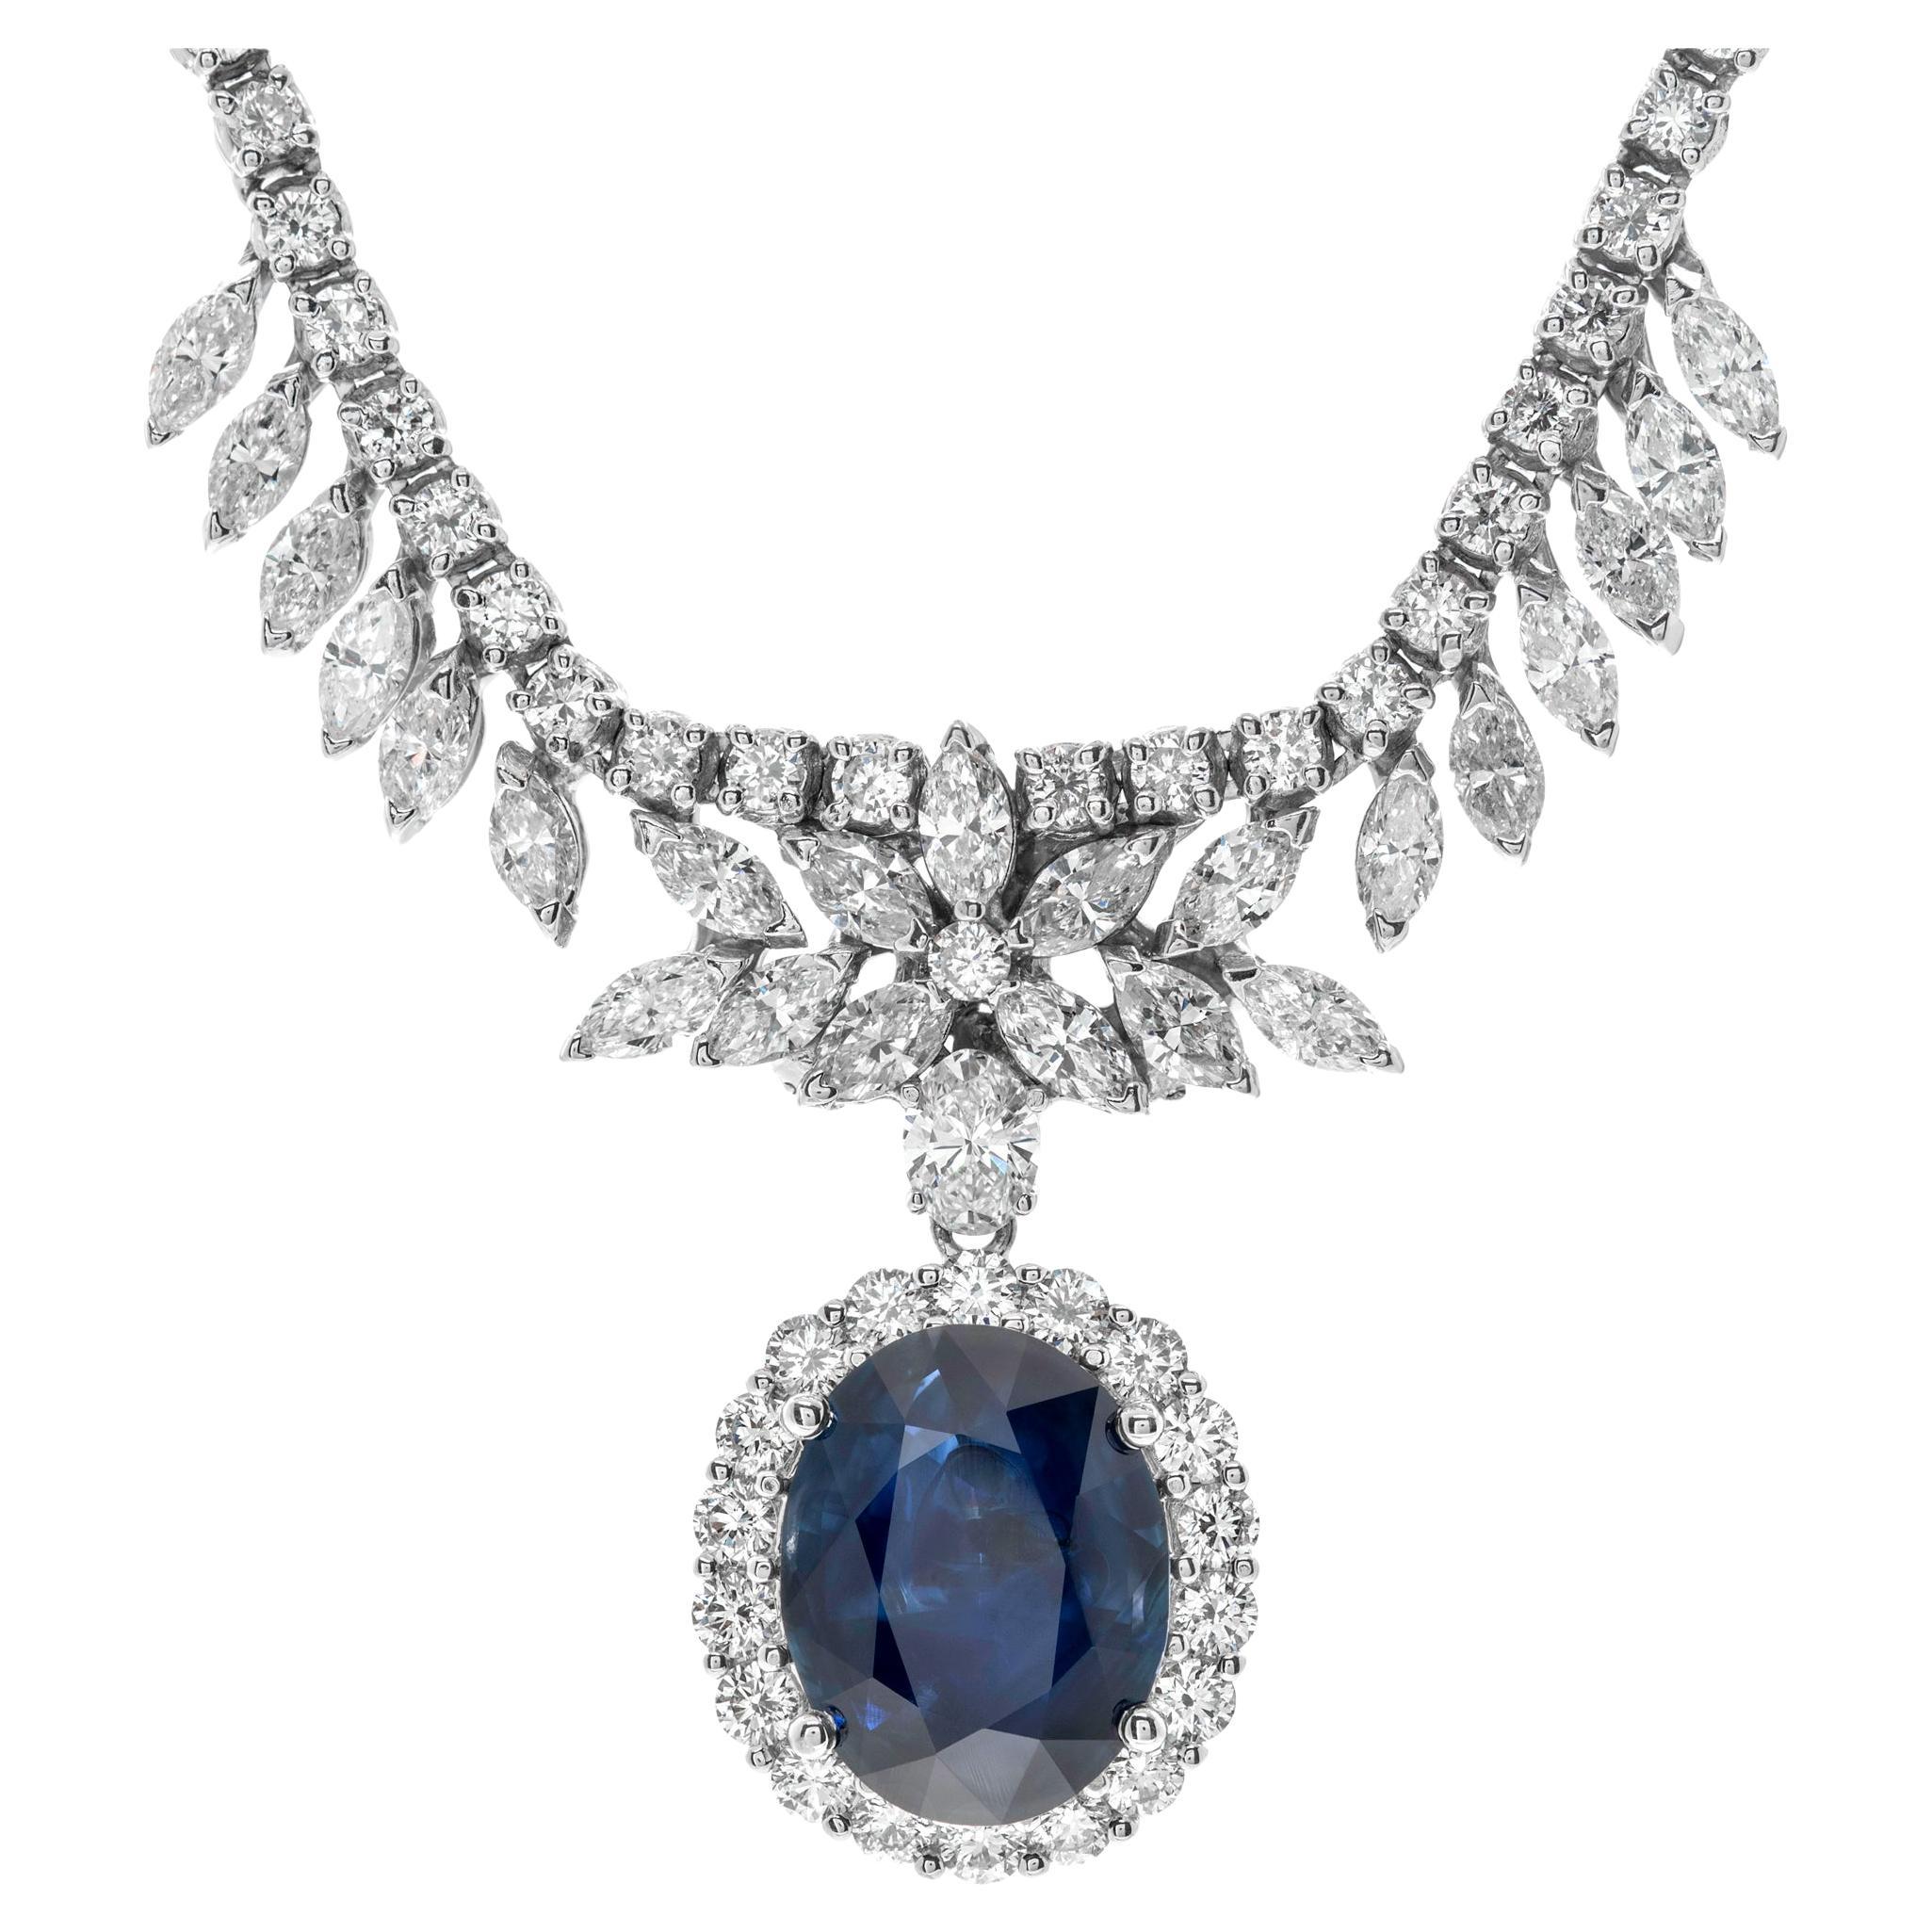 Halskette aus Weißgold mit rundem Diamanten im ovalen Marquise-Schliff und blauen Saphiren im ovalen Schliff